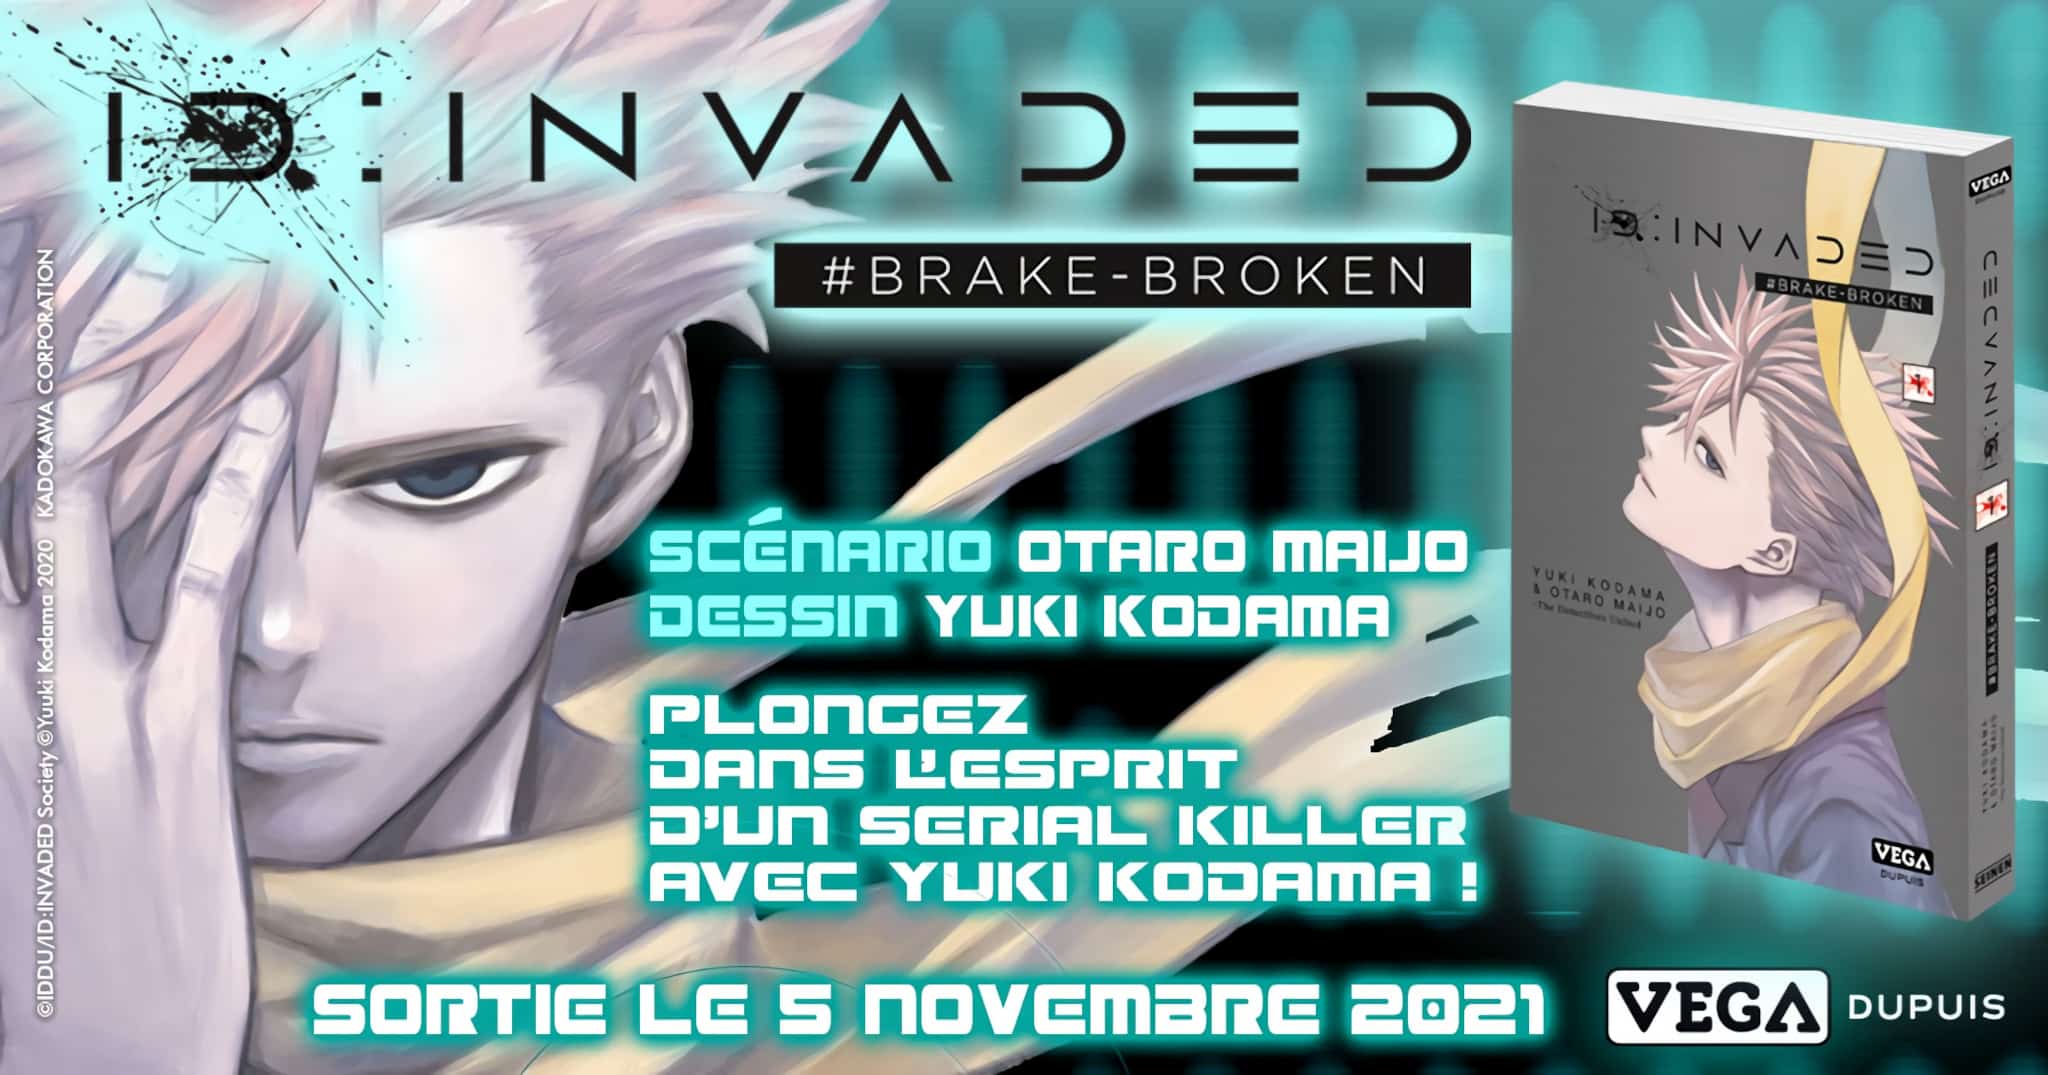 Annonce du manga ID:INVADED #BRAKE-BROKEN en France aux éditions Vega-Dupuis